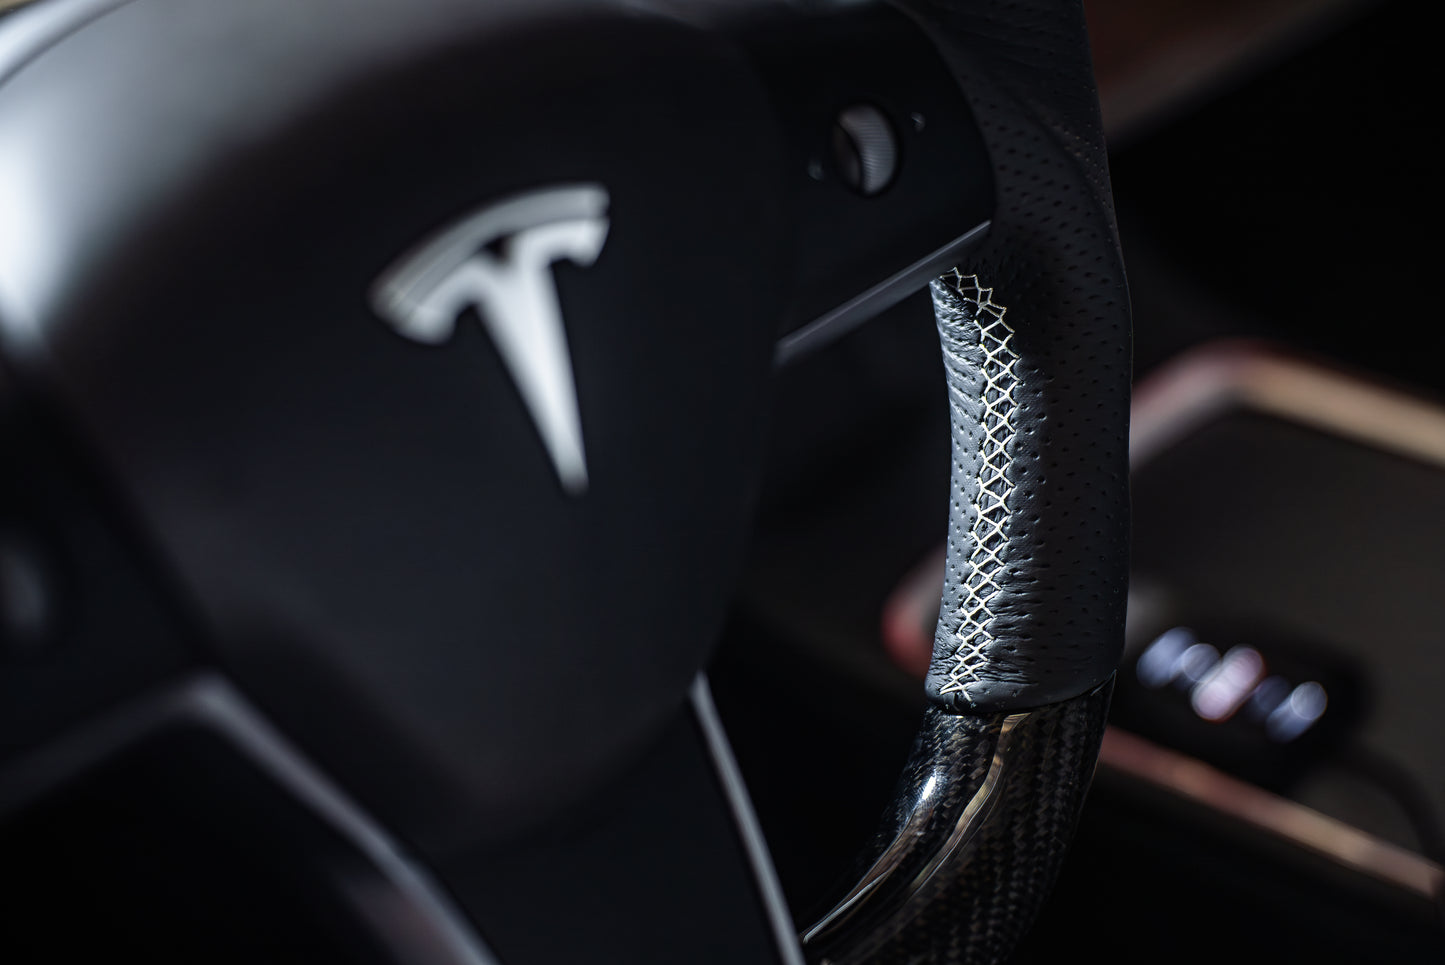 Origin Stryfe | OE Carbon Fiber Steering Wheel - Tesla Model 3 & Model Y